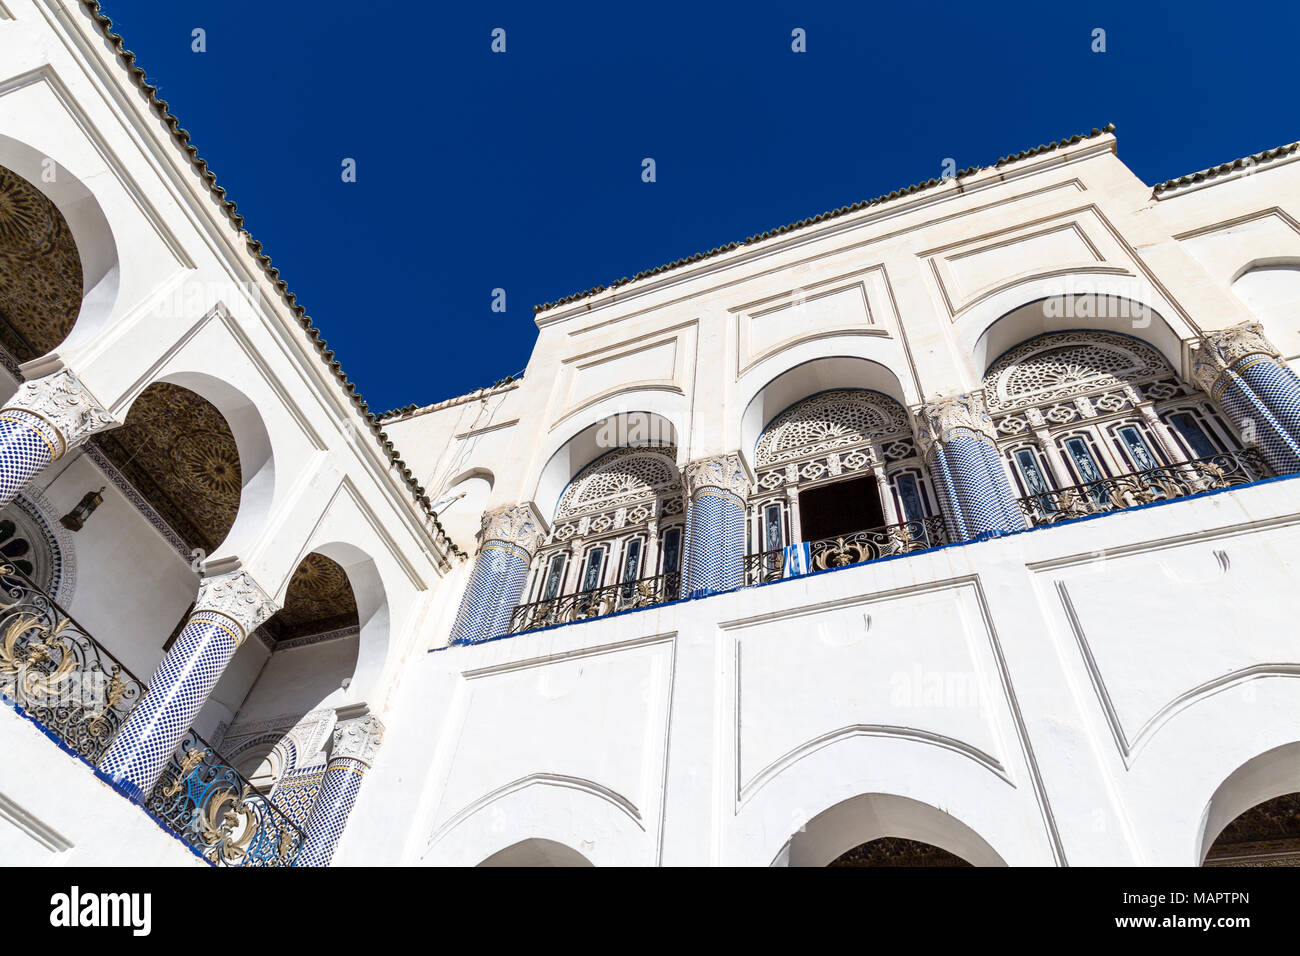 Detail der orientalischen Architektur eines marokkanischen Palastes, mit Bögen, Säulen und Mosaikfliesen Dekorationen, Palais El Mokri, Fes, Marokko Stockfoto